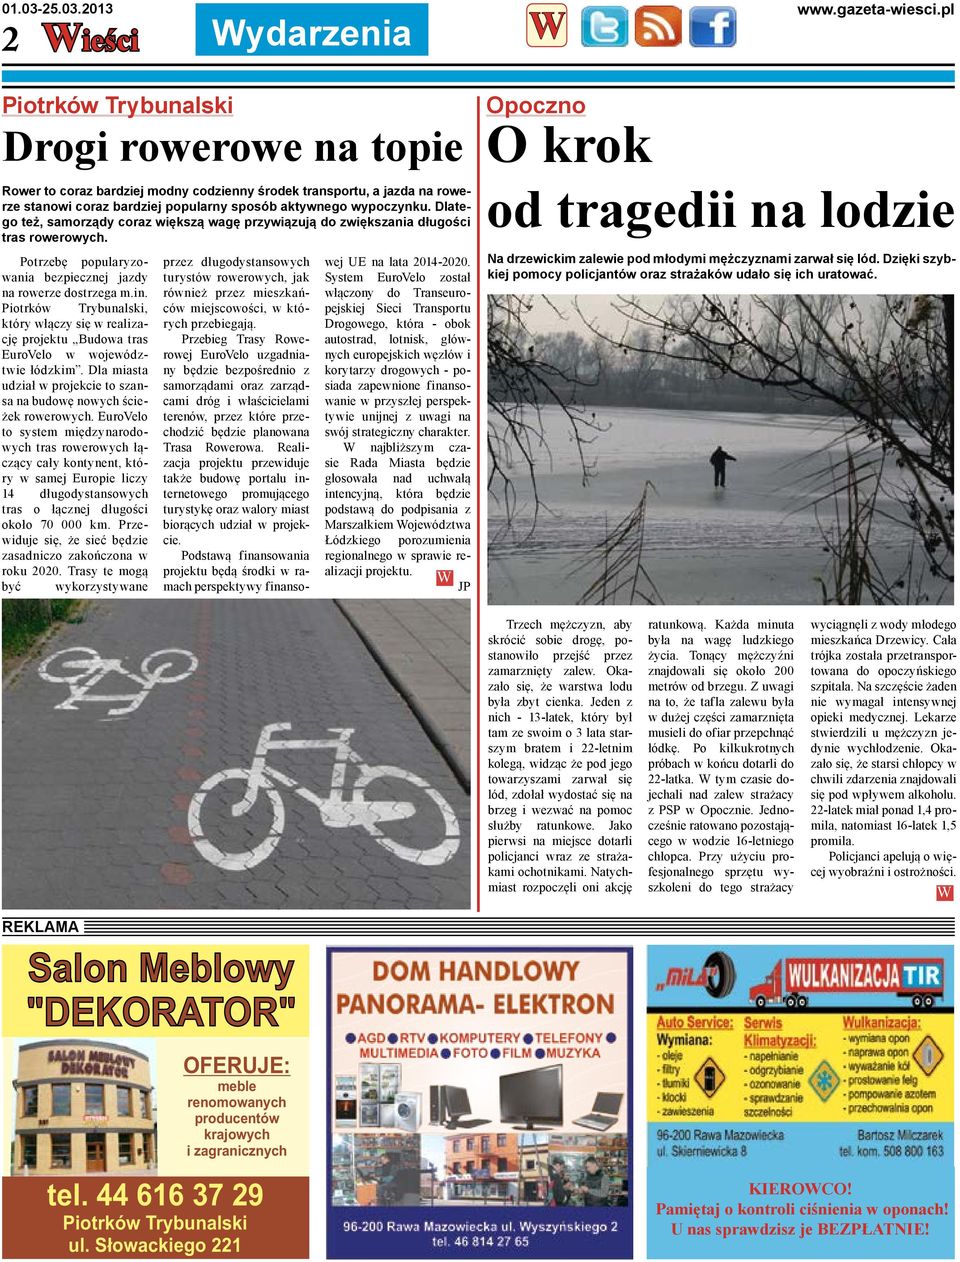 Piotrków Trybunalski, który włączy się w realizację projektu Budowa tras EuroVelo w województwie łódzkim. Dla miasta udział w projekcie to szansa na budowę nowych ścieżek rowerowych.